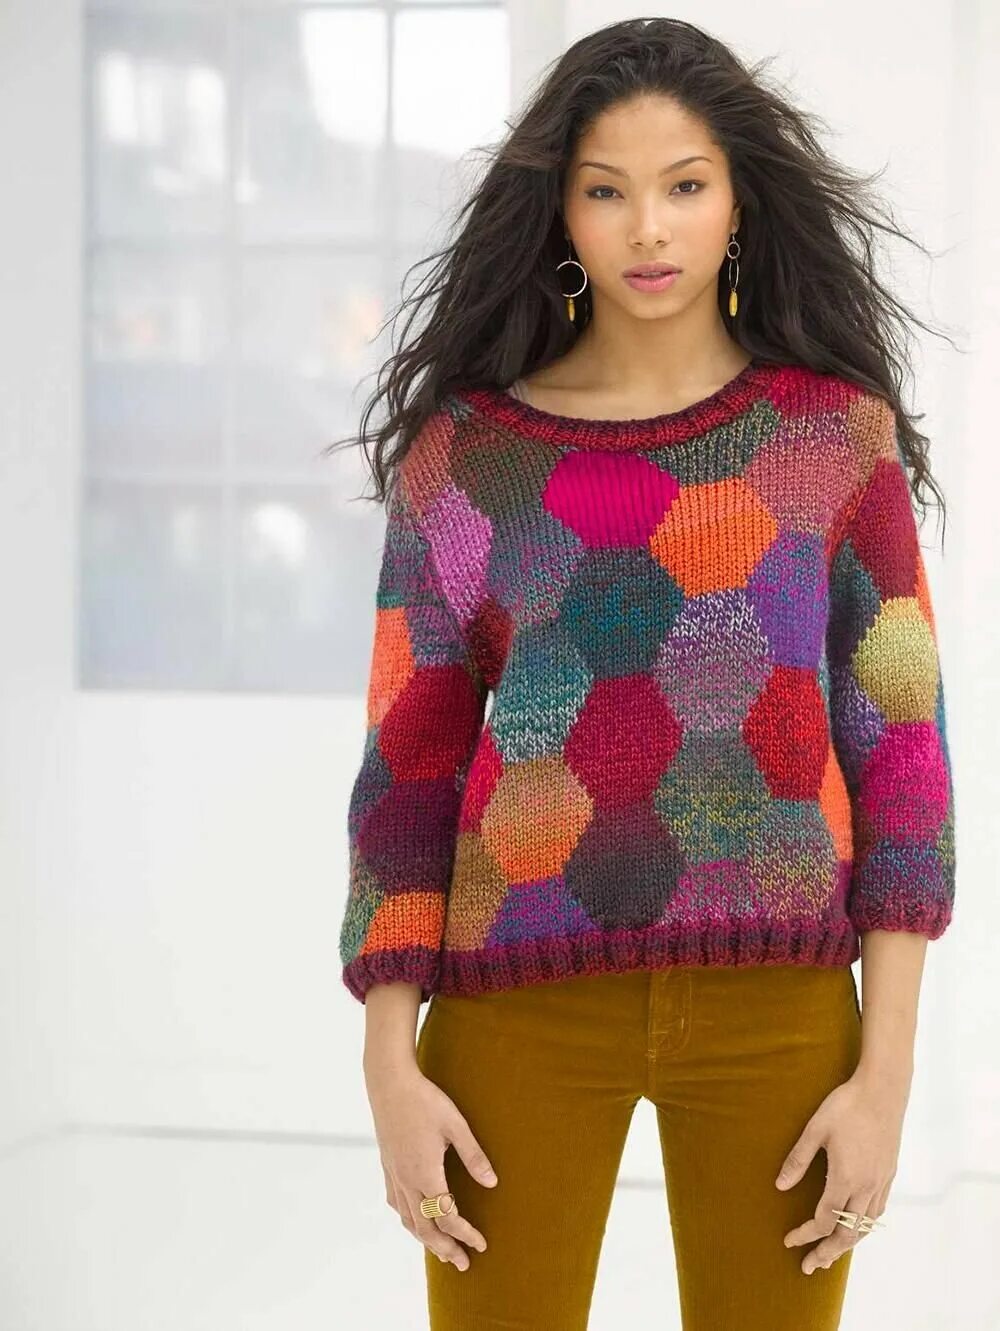 Цветной свитер. Яркий свитер. Цветная кофта. Разноцветный свитер. Джемпер кругами